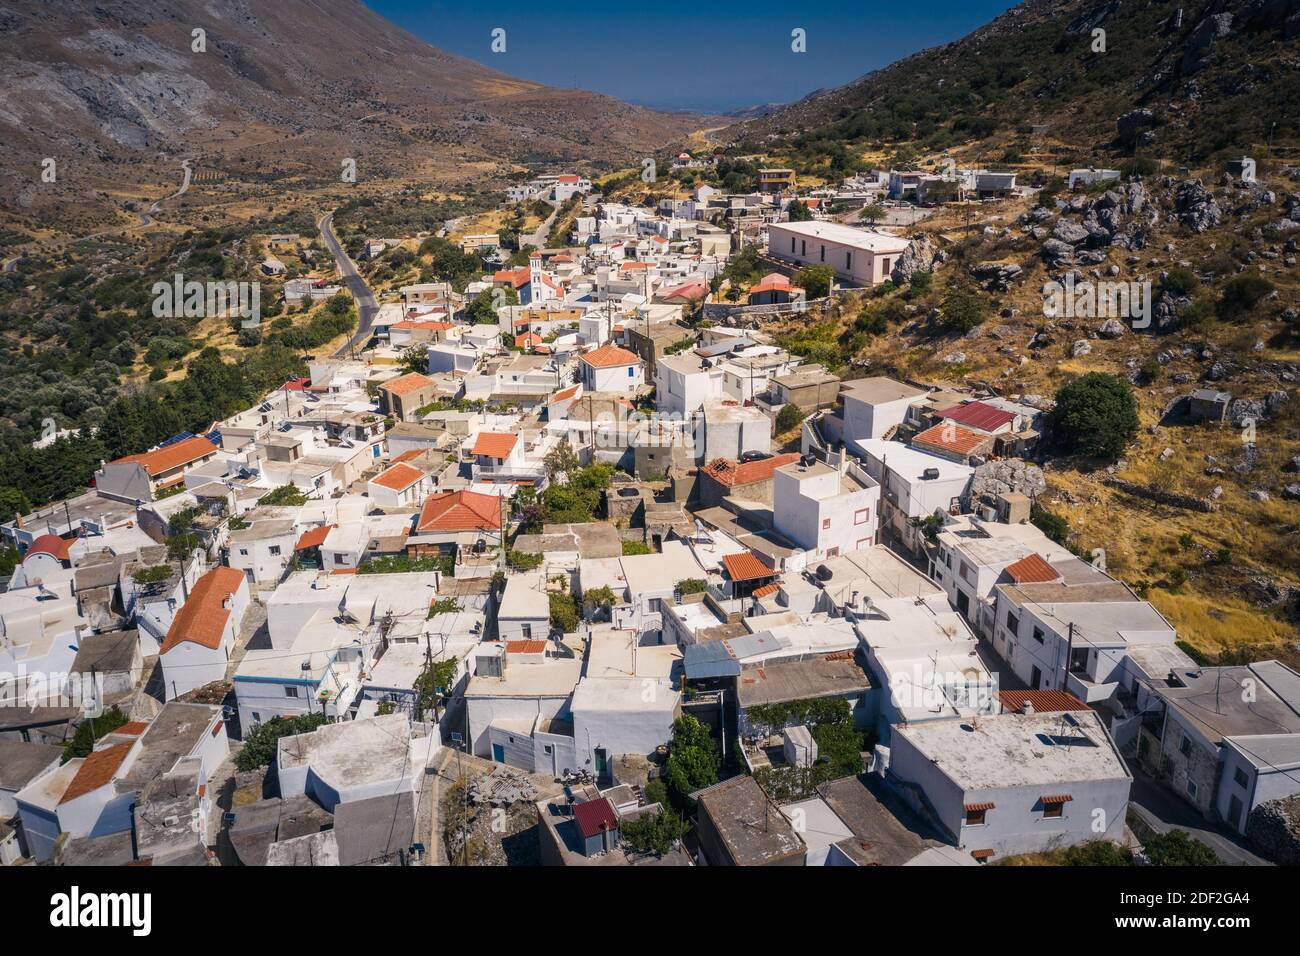 Traditional Cretan village of Akoumia, Greece Stock Photo